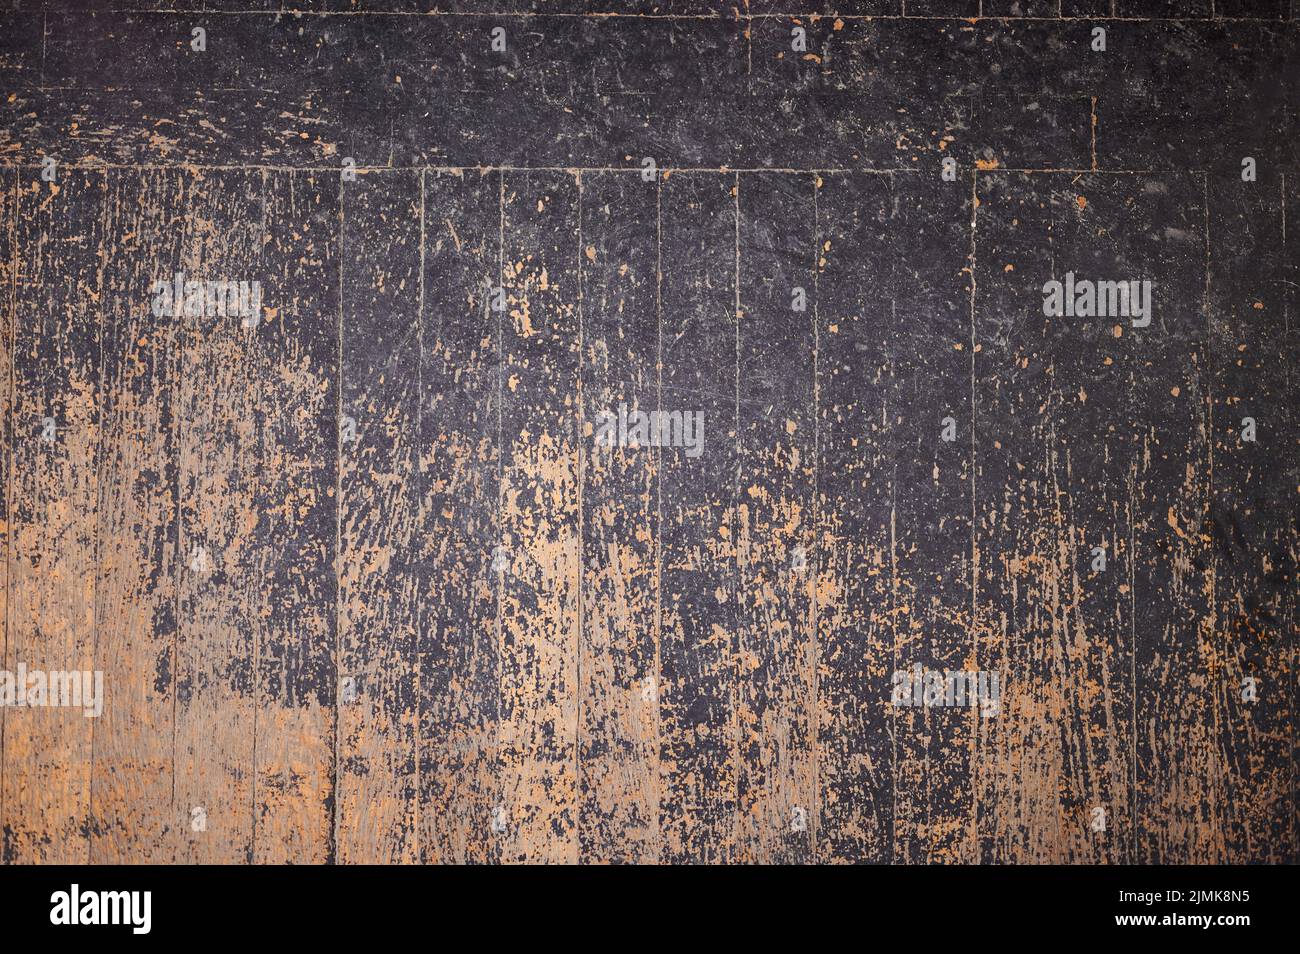 Textura del viejo piso de madera con pintura negra dañada Foto de stock